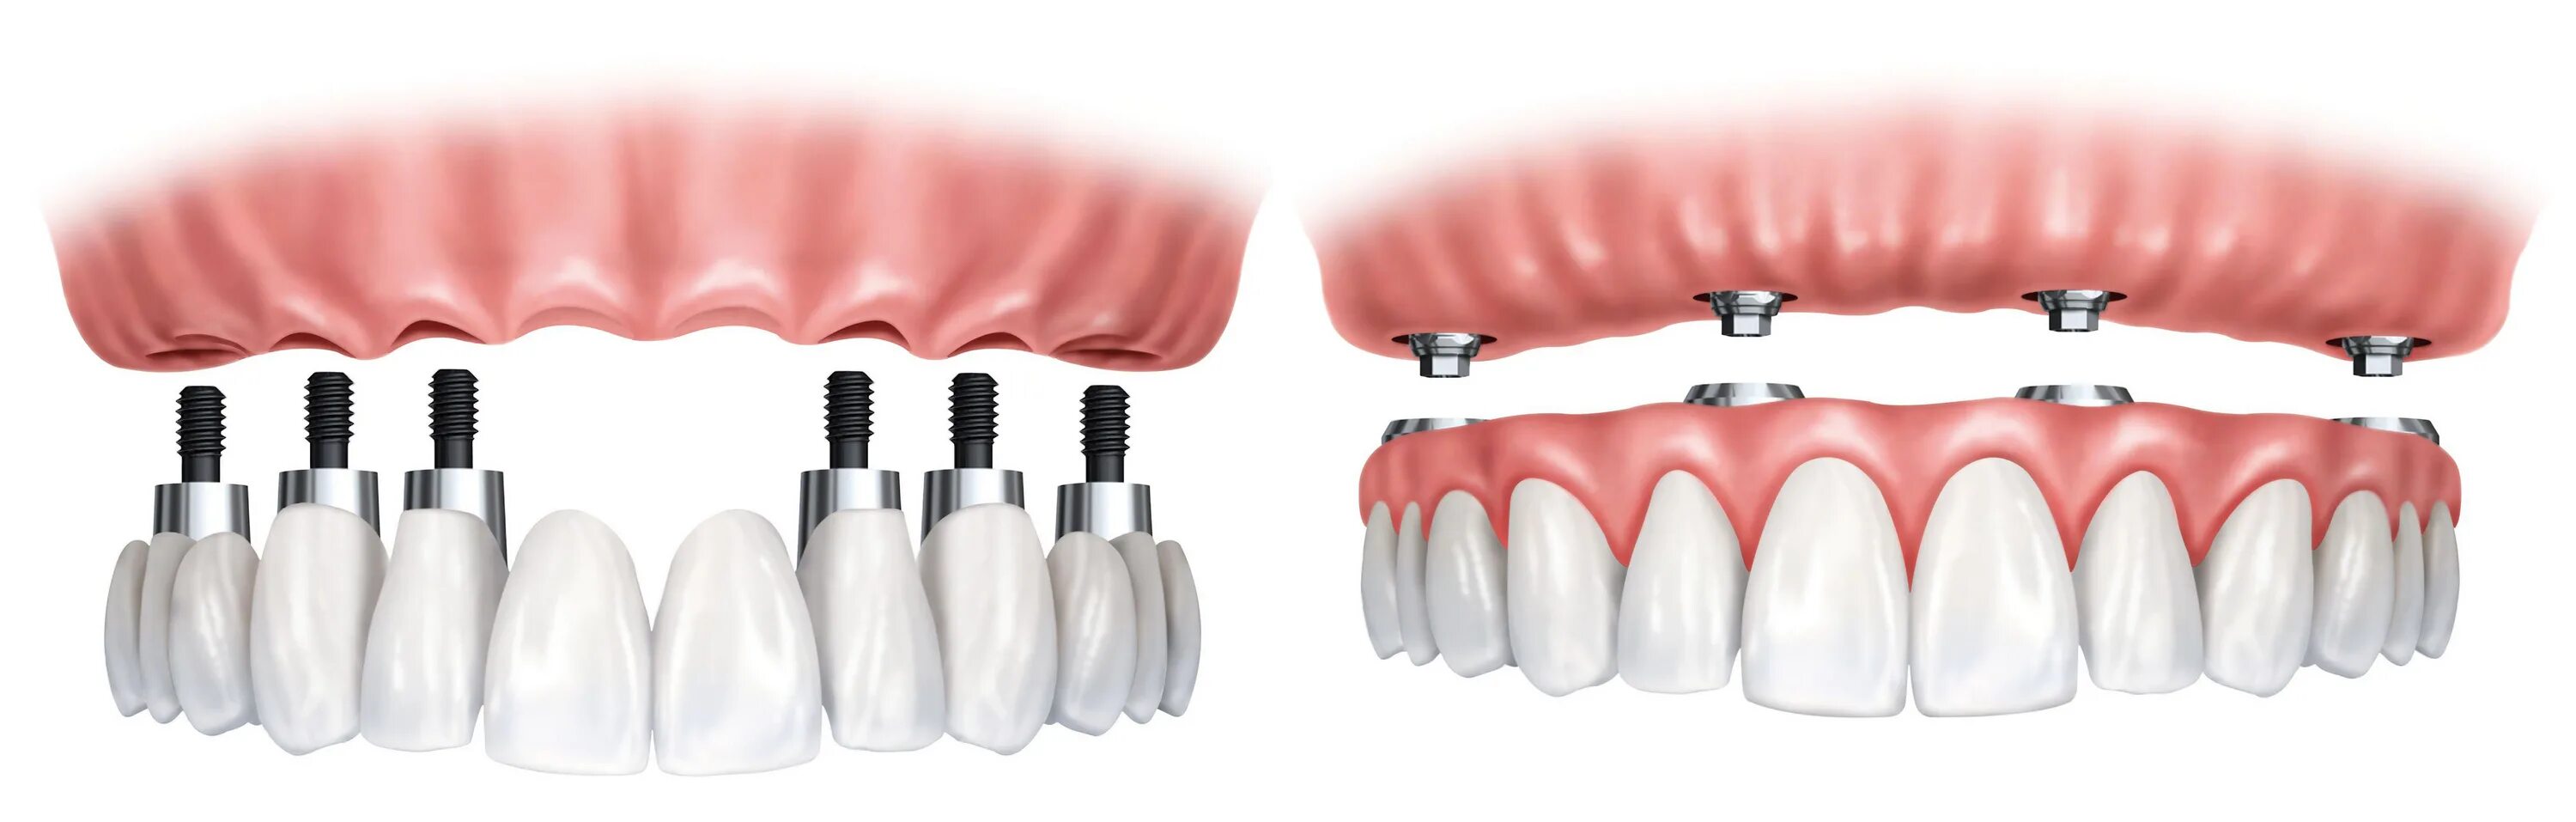 Имплантация зубов на 6 имплантах верхней челюсти. Имплантация all-on-6 (имплантация на 6 имплантах). Имплантация зубов all on 4.